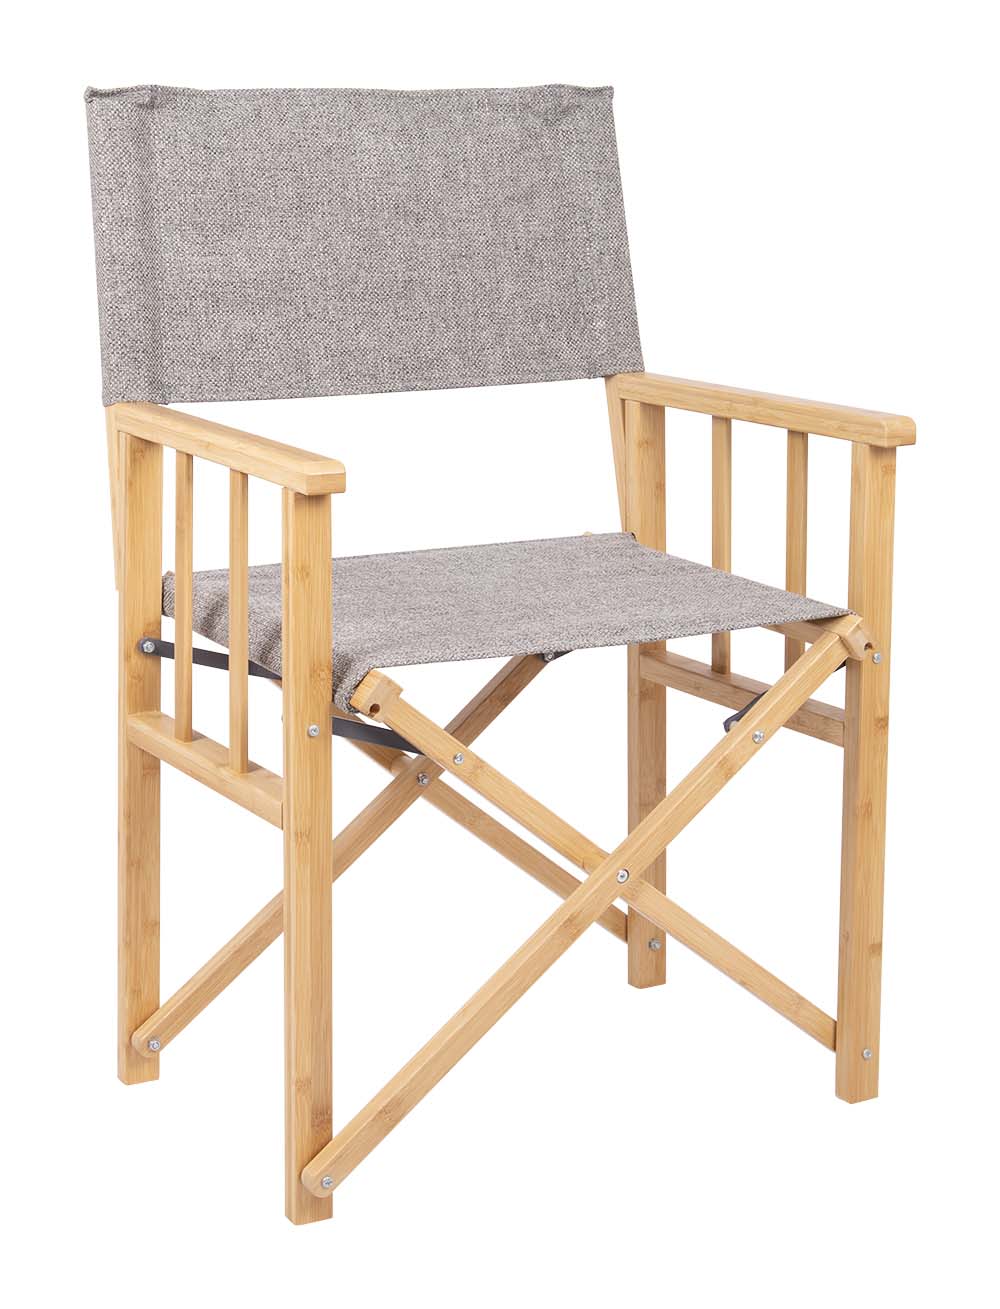 1267225 Una elegante silla de director de la Urban Outdoor collection. La silla cuenta con una resistente estructura de bambú. La tapicería está hecha de Nika, que tiene aspecto de lino. Ideal para usar en la mesa o afuera frente a la tienda. Compacto y fácil de transportar.